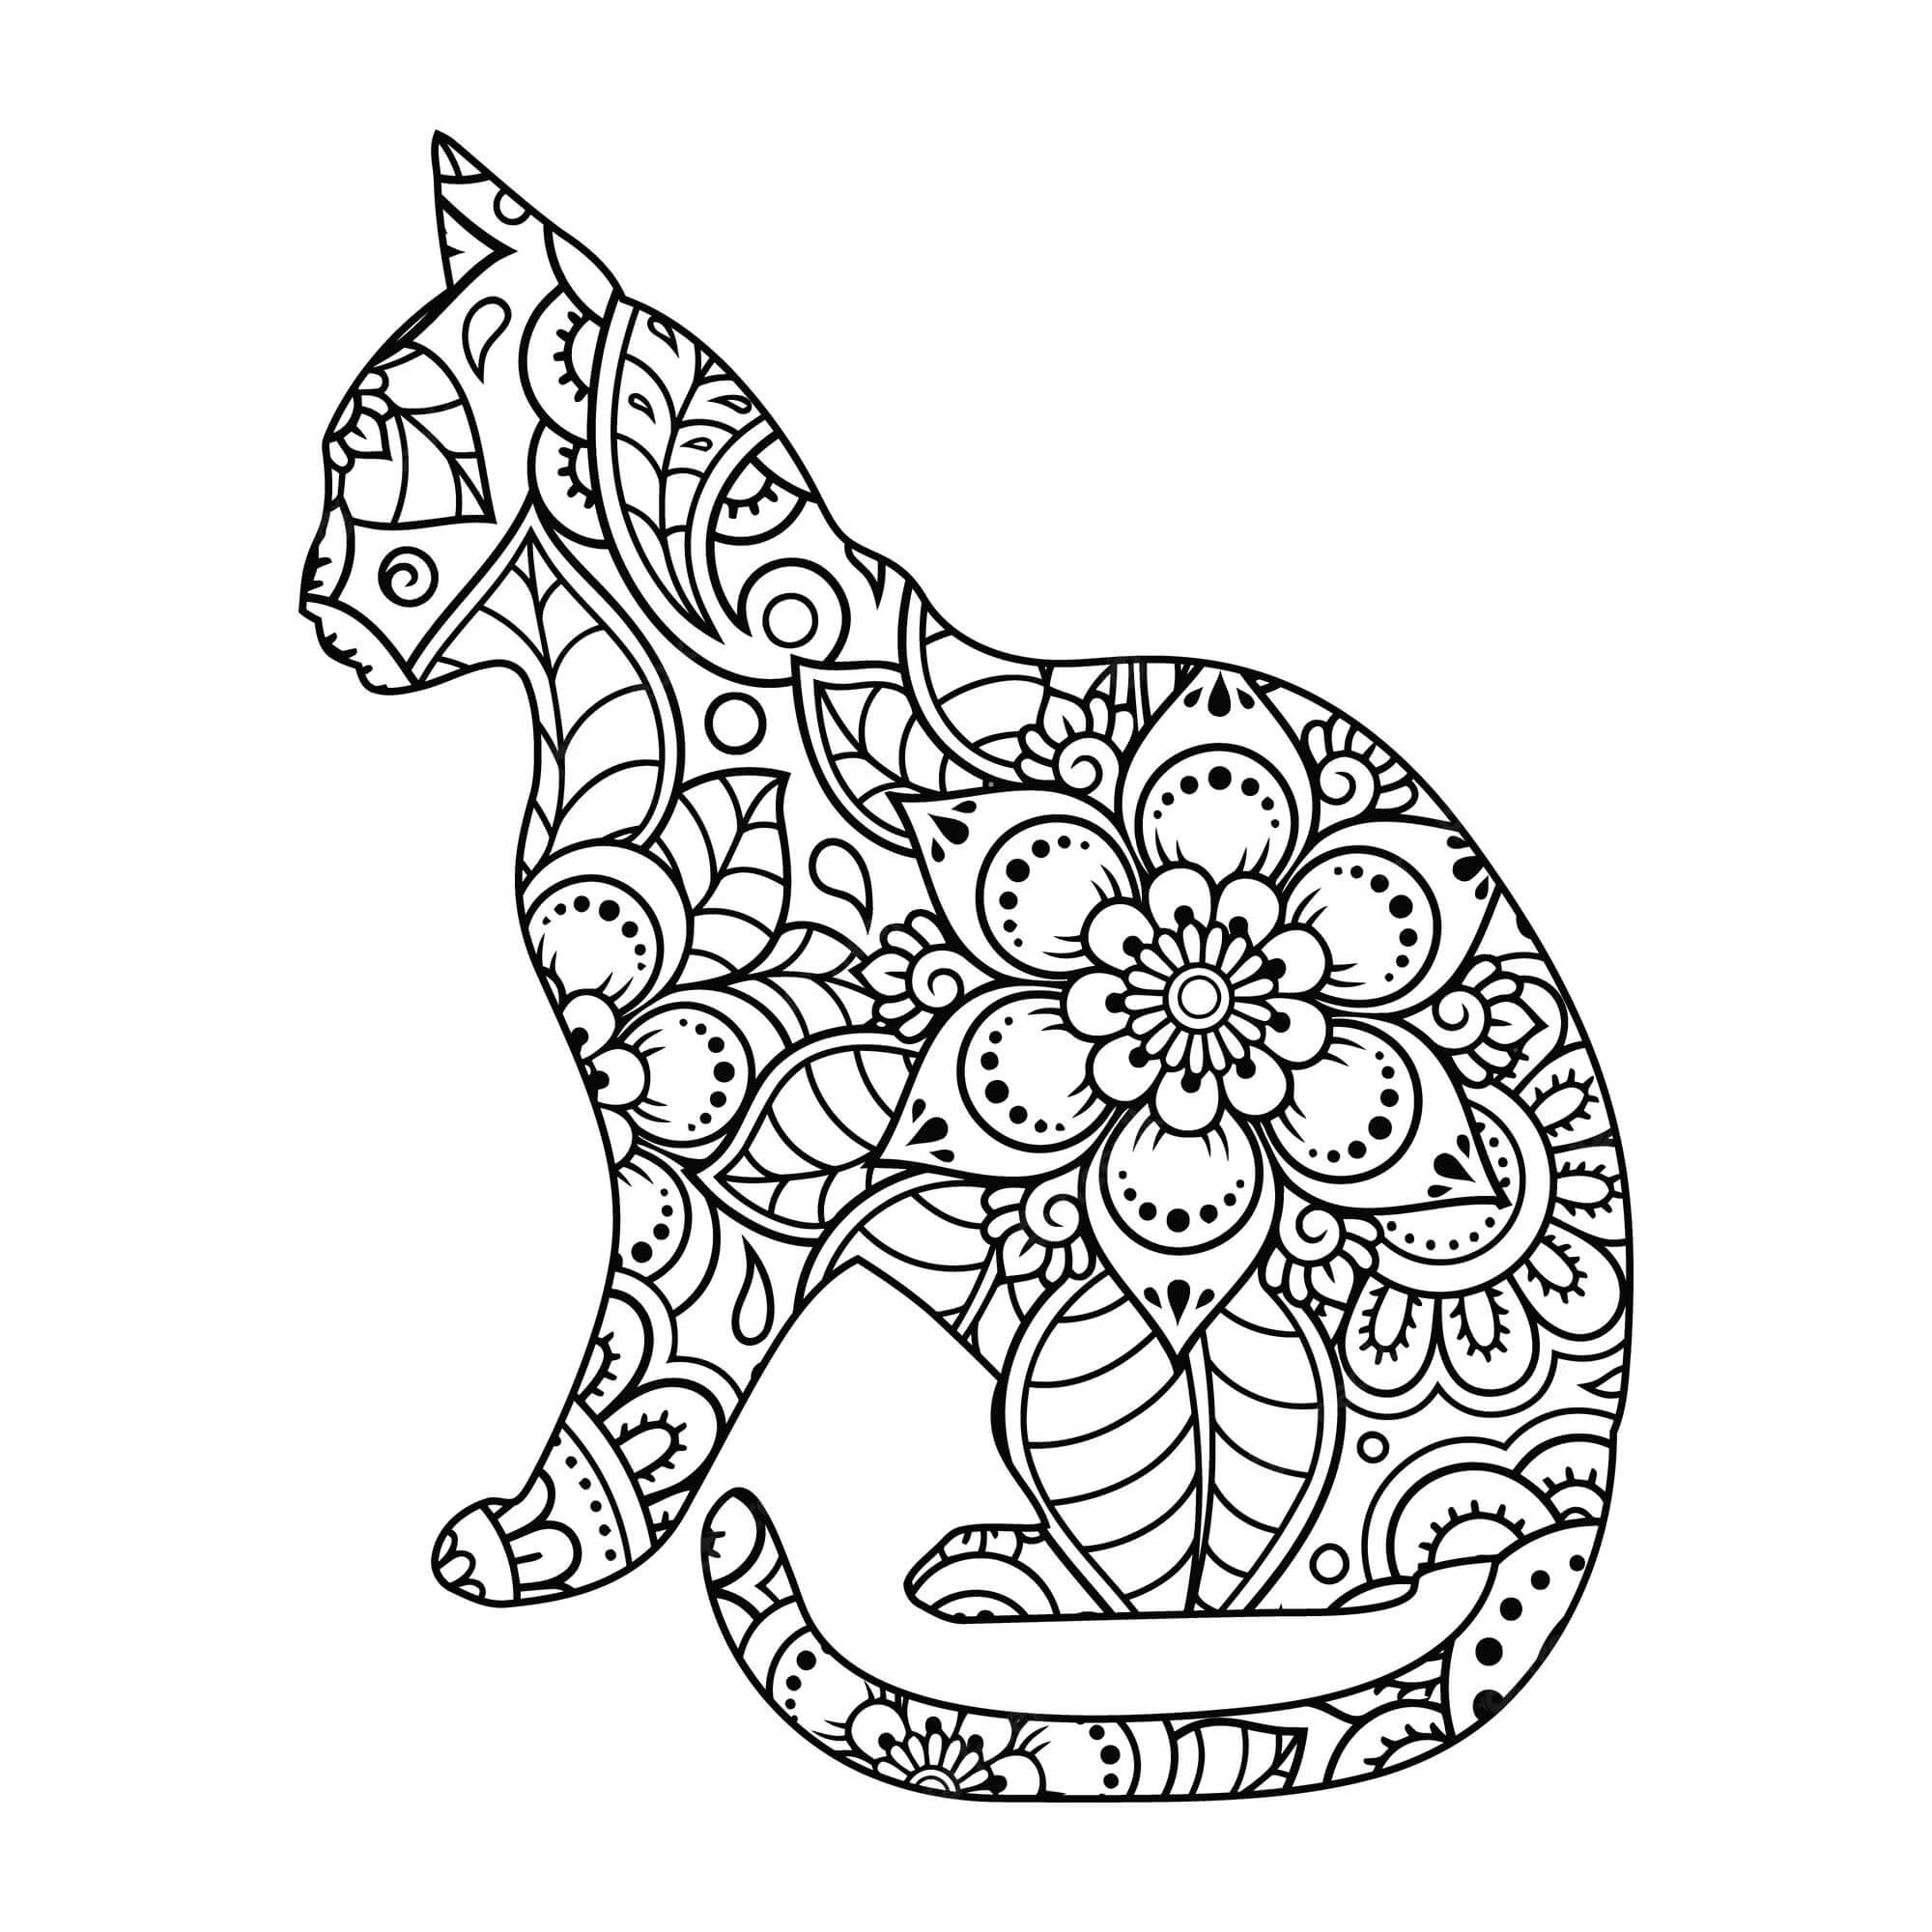 Mandala Cat Coloring Page – Sheet 3 Mandalas